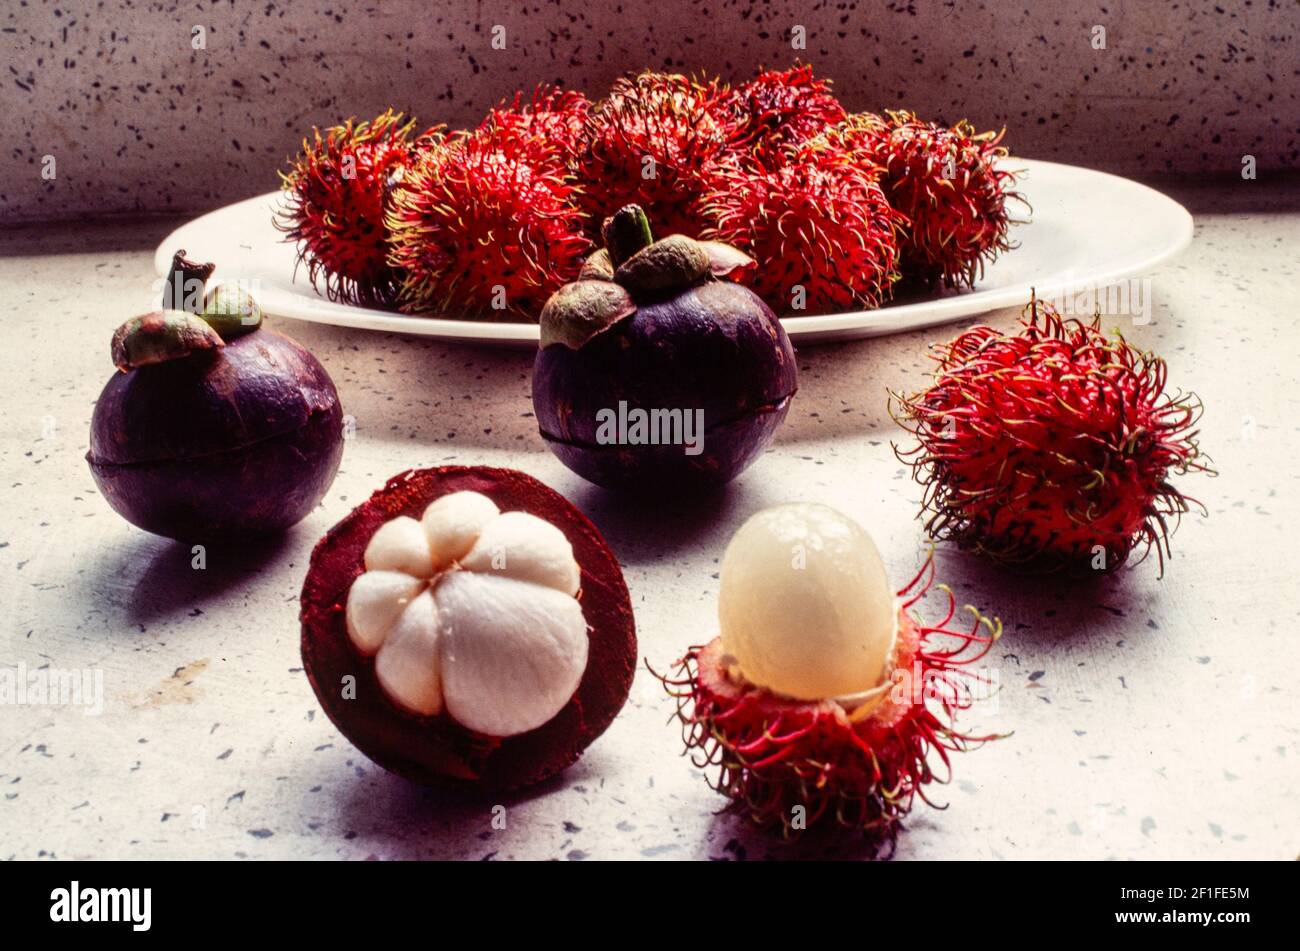 Frutas vietnamitas, el mangostán (Mang Cut) izquierda y el rambutan (Chom Chom) o lichee peludo, Ciudad Ho Chi Minh, Vietnam, junio de 1980 Foto de stock